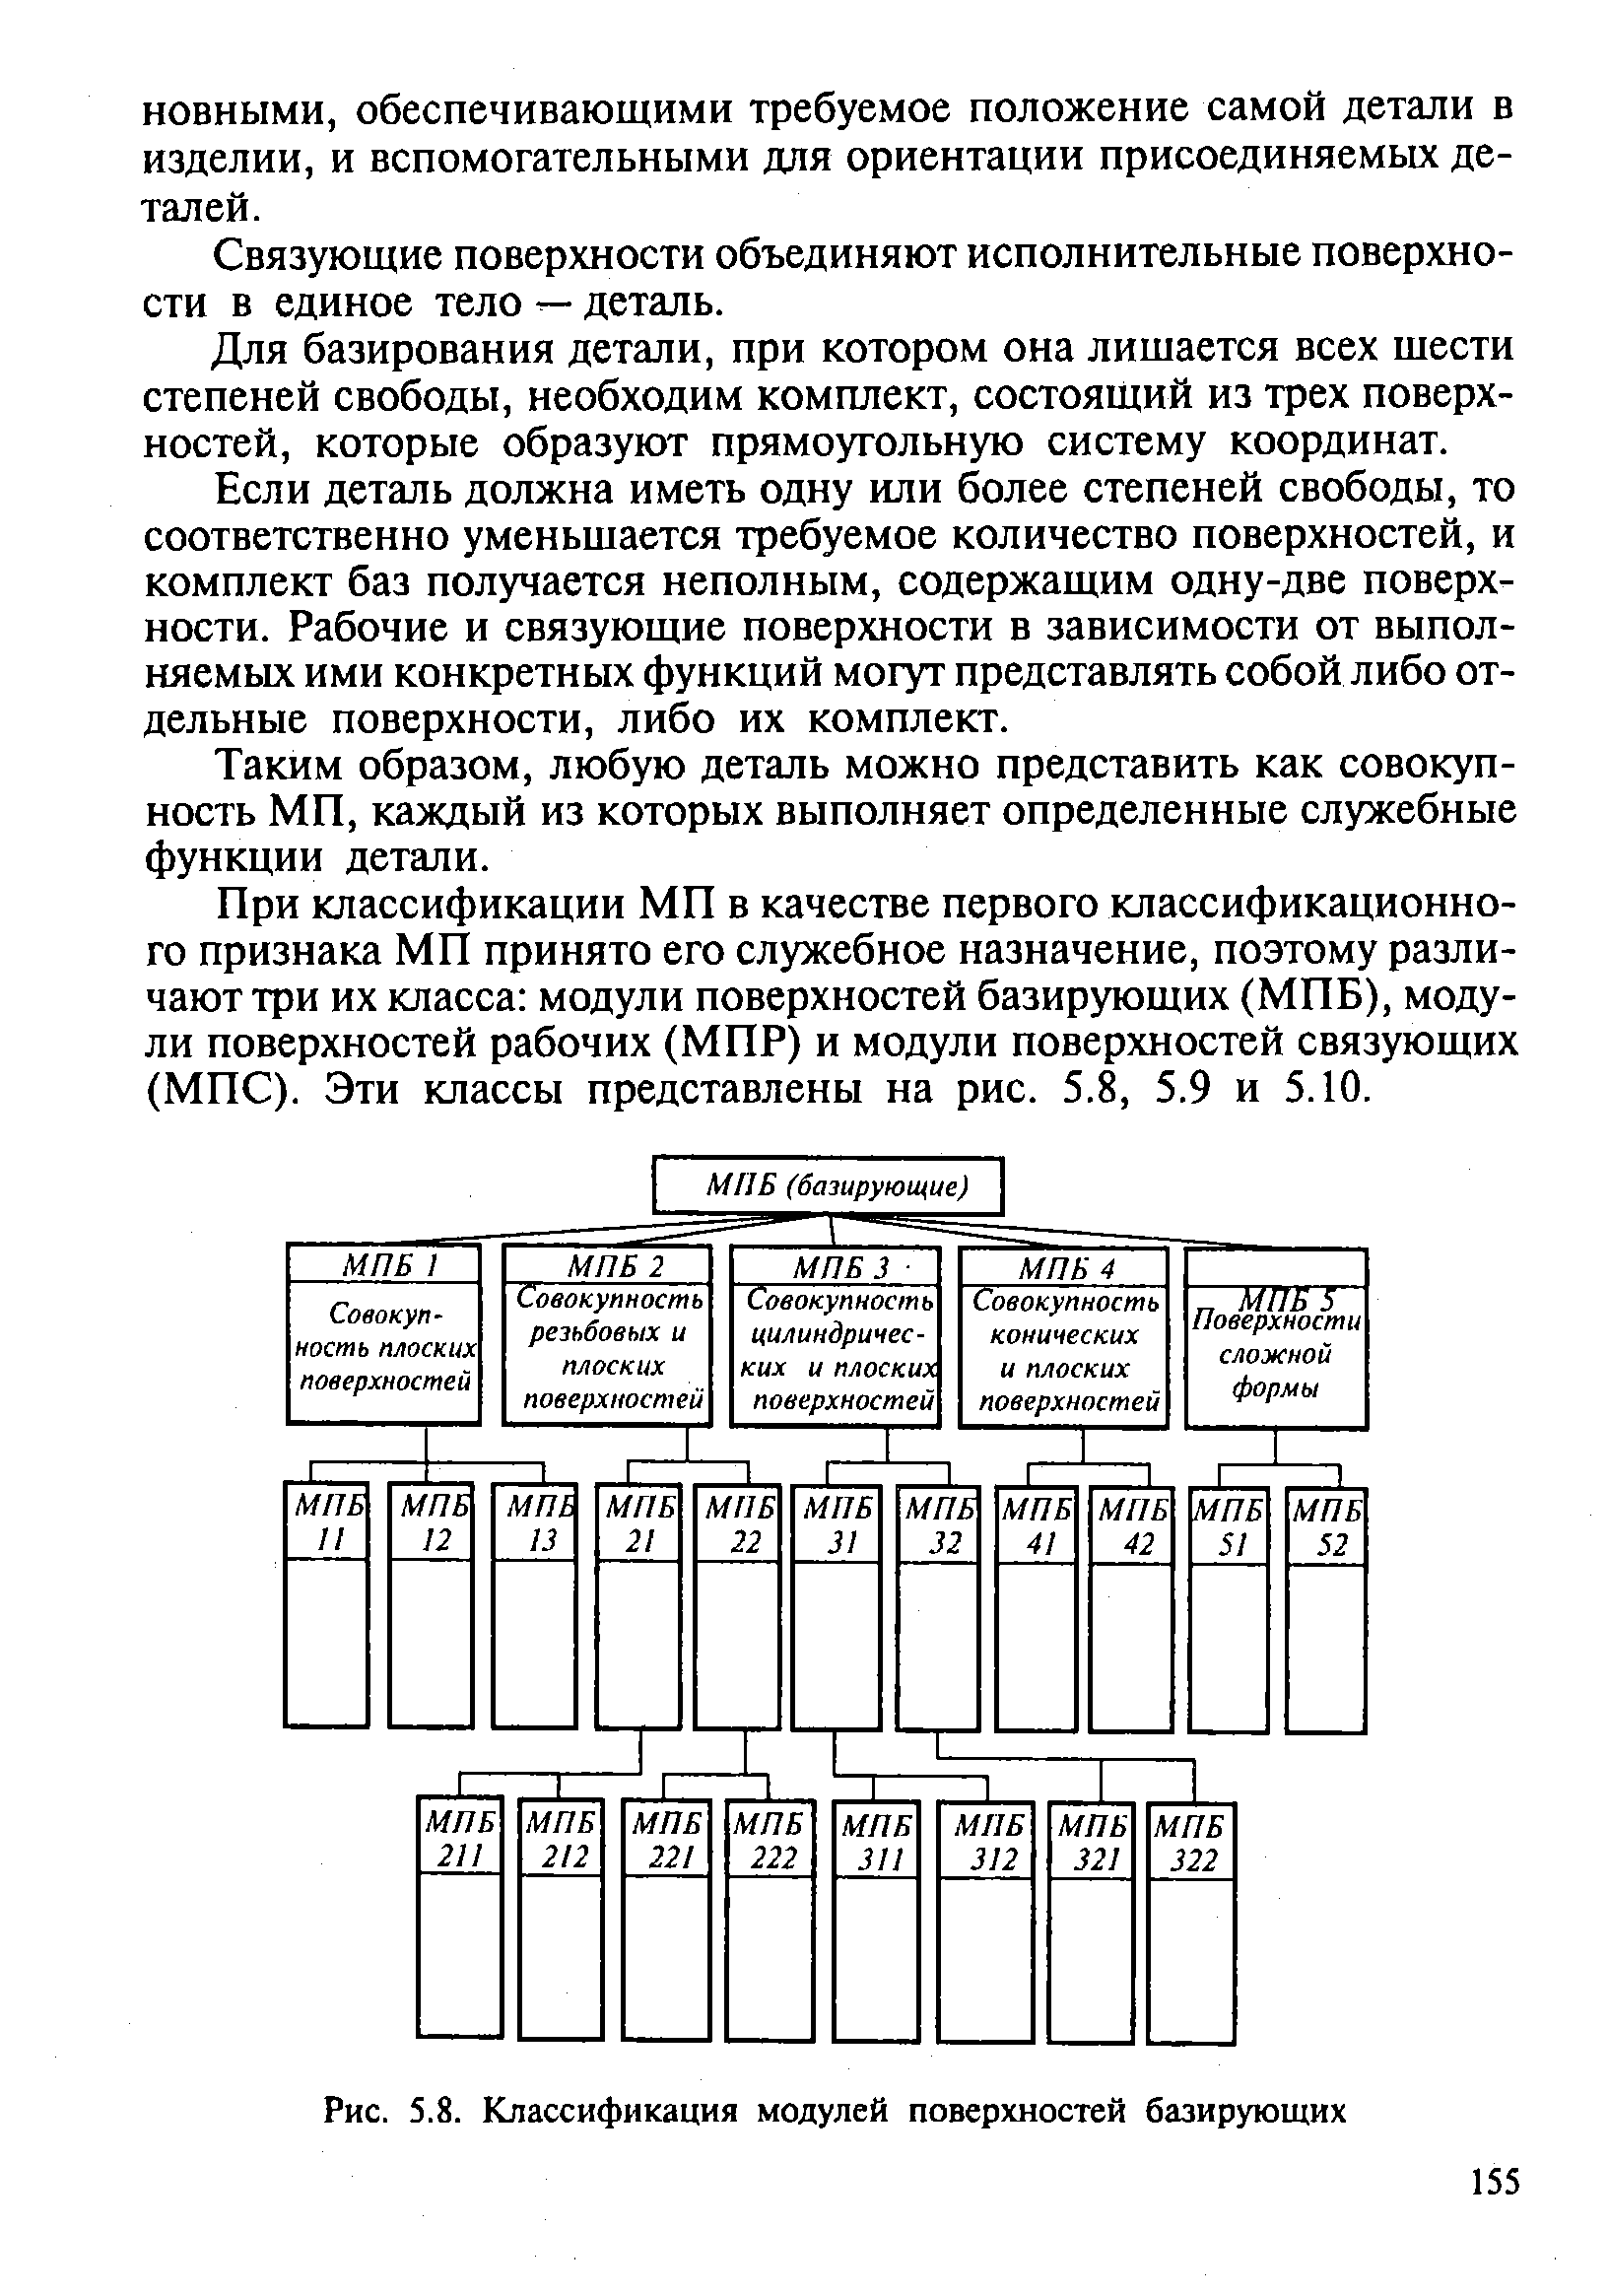 Рис. 5.8. Классификация модулей поверхностей базирующих
